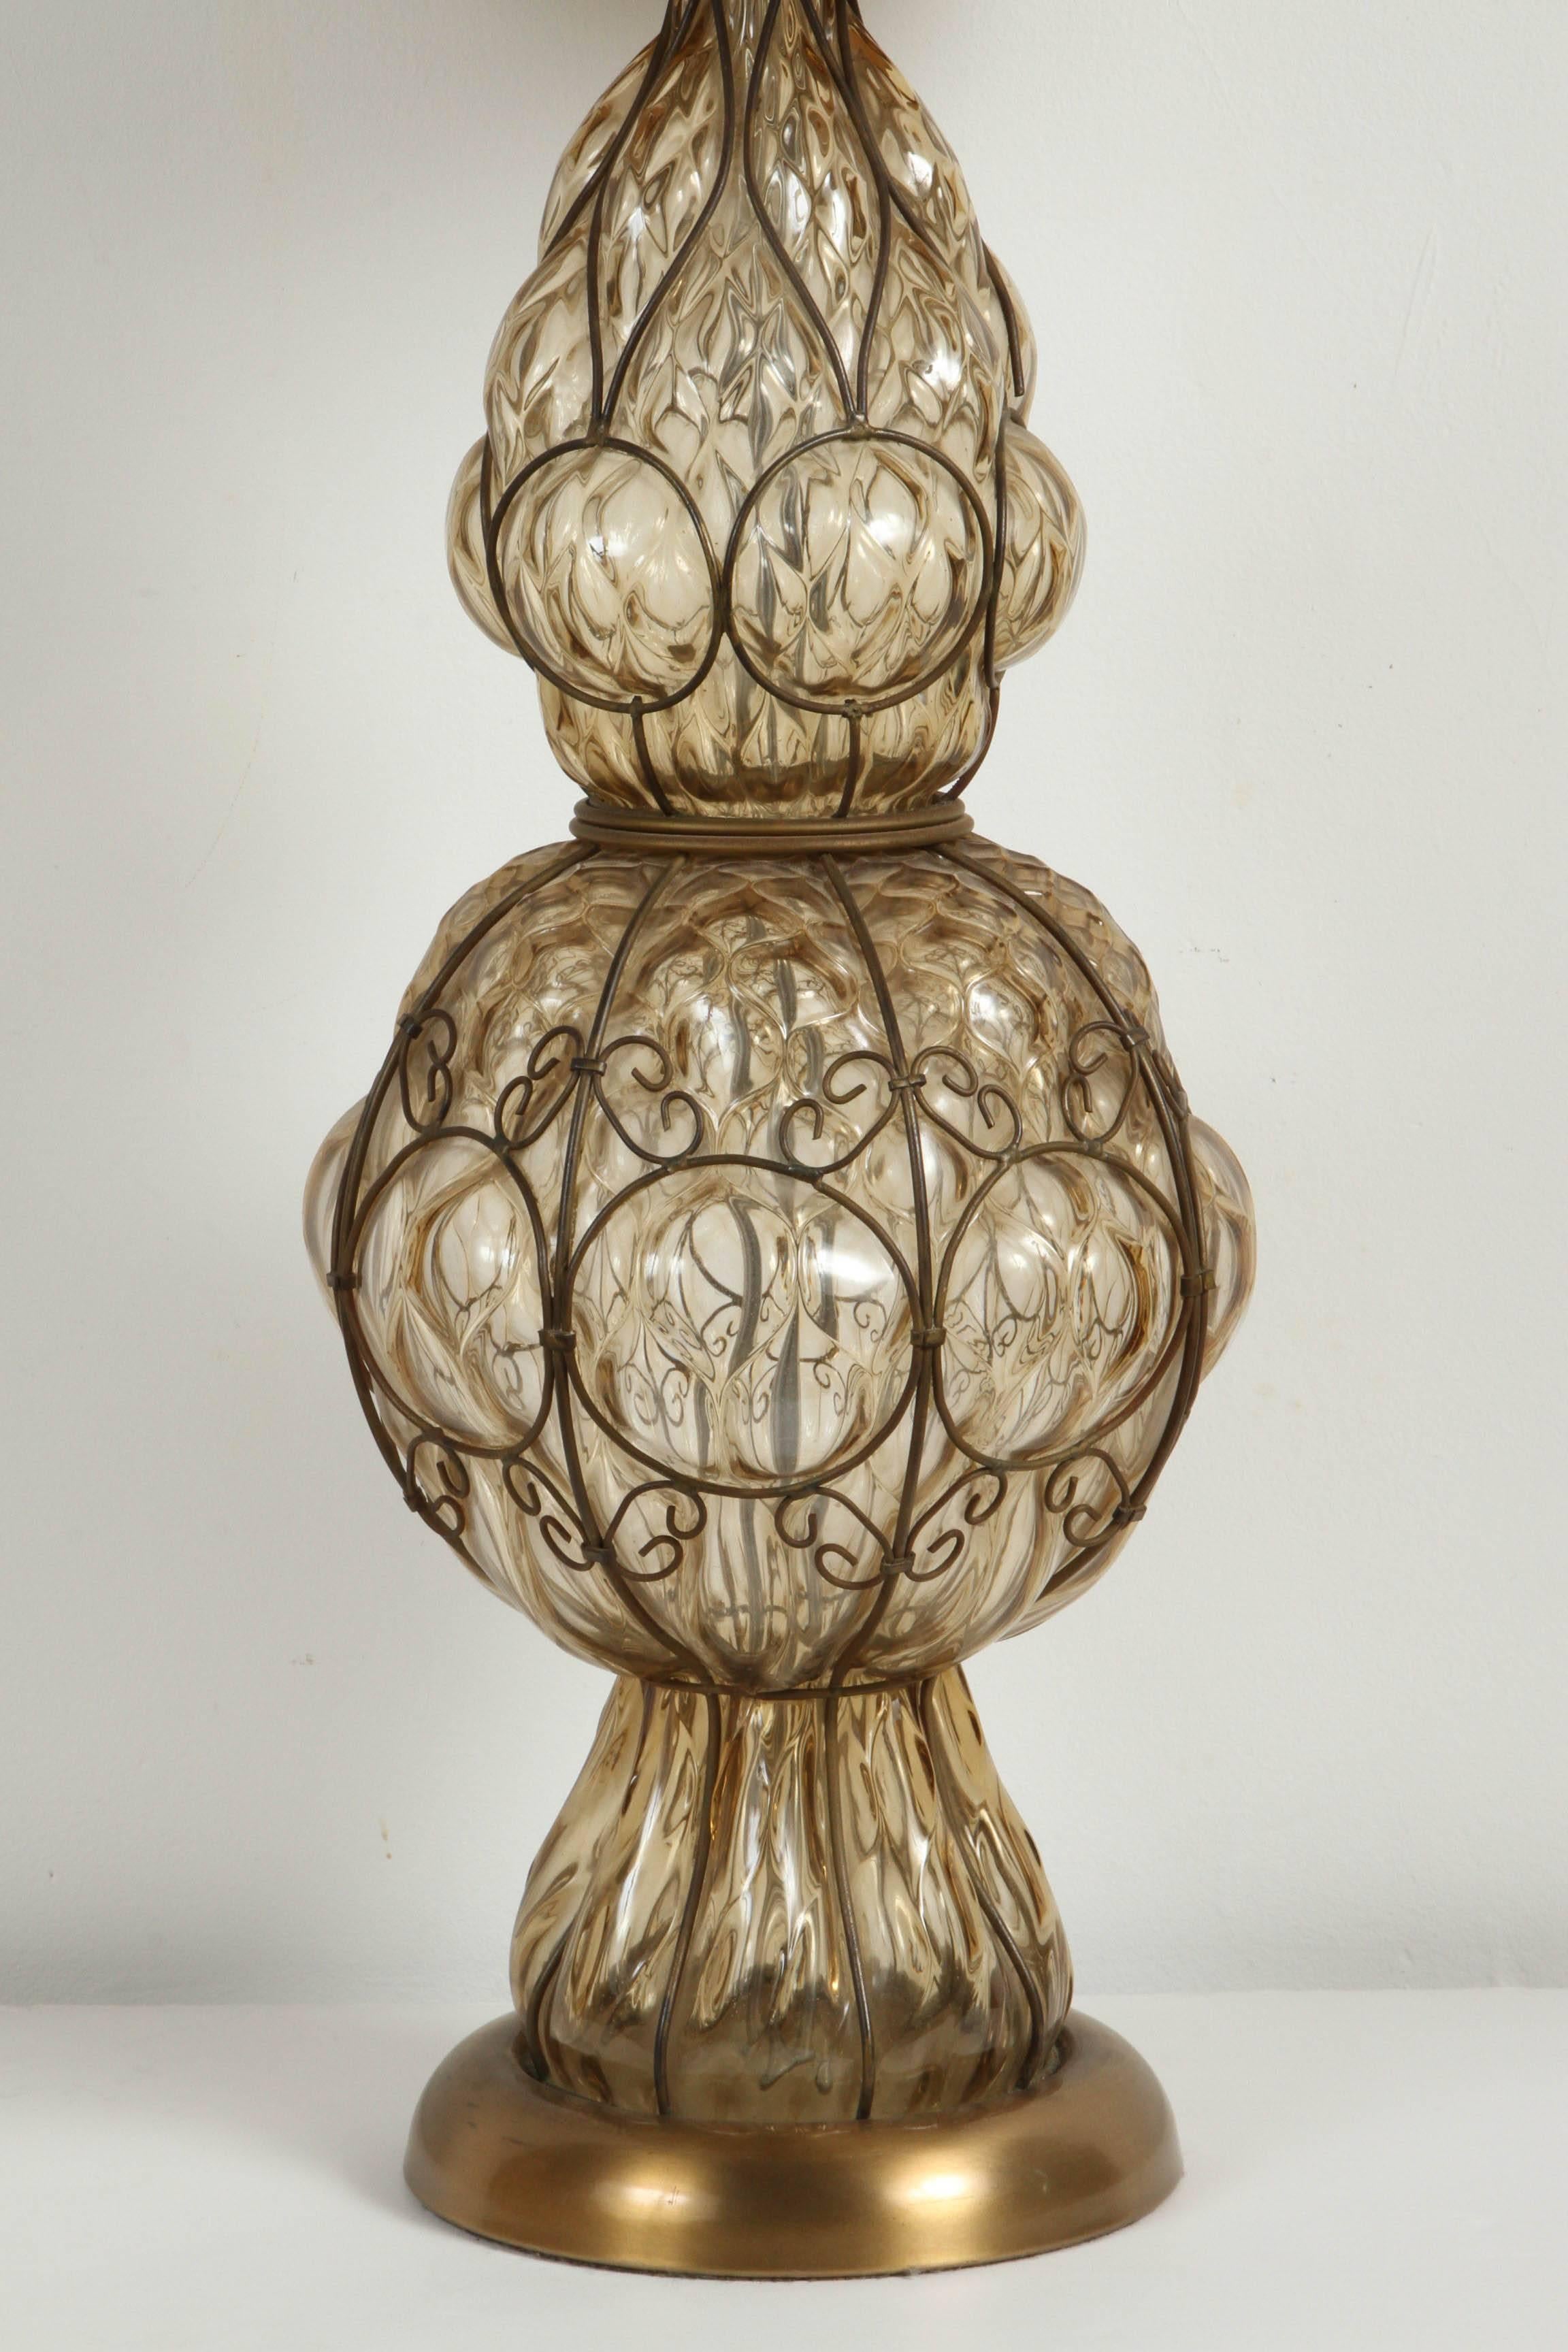 Lampe de table en verre ambré à bulles d'air de Murano, d'origine italienne, du milieu du siècle dernier, signée Marbro.
Verre soufflé à la main de style vénitien avec design de cage câblée en métal.
Mesures : La base a un diamètre de 9